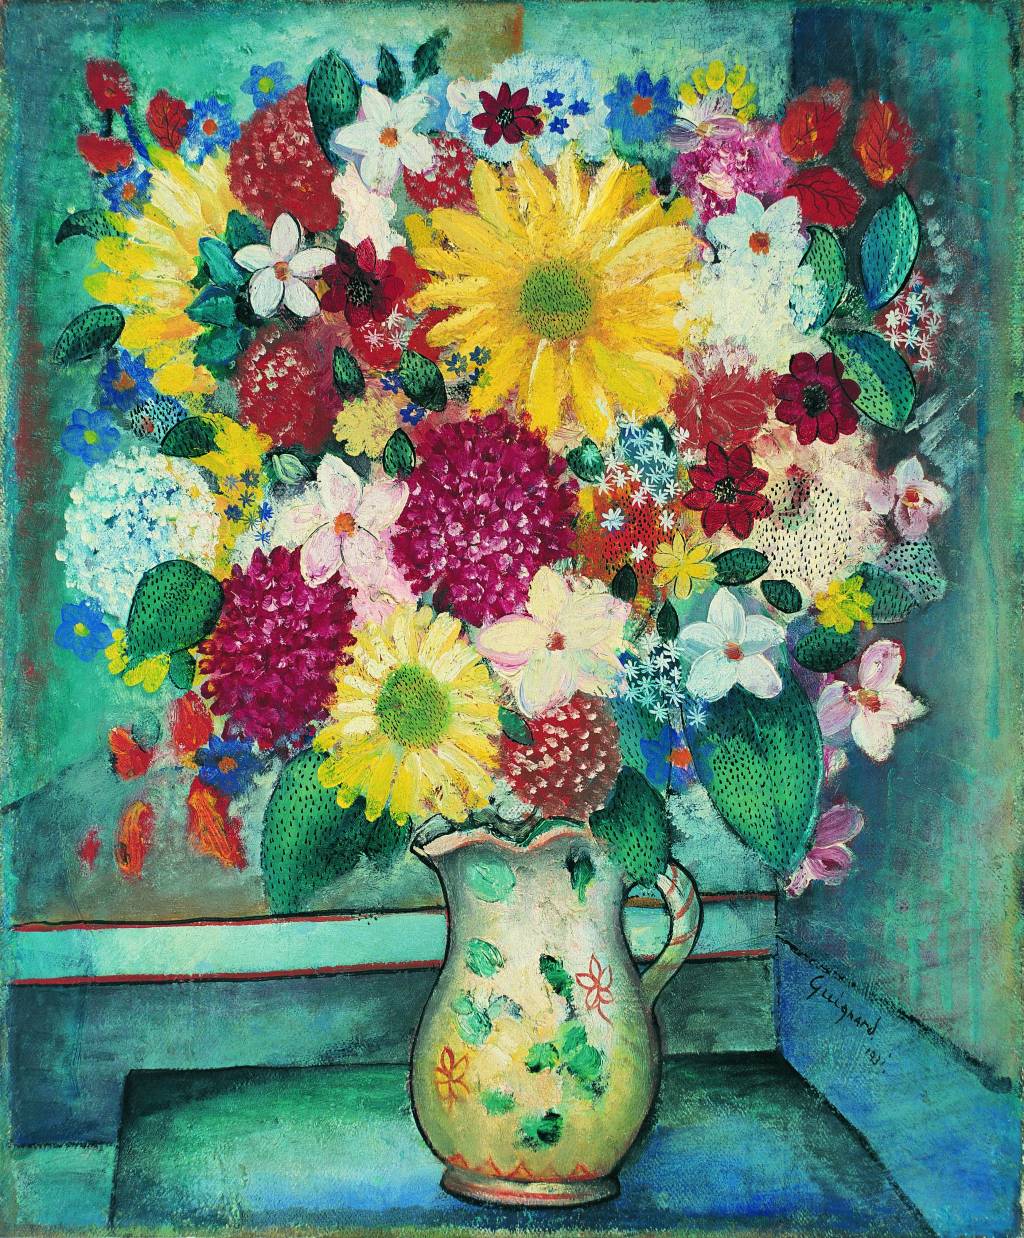 Pintura de Guignard mostra um vaso de flores coloridas, em tons de amarelo, branco e vermelho, num fundo azul